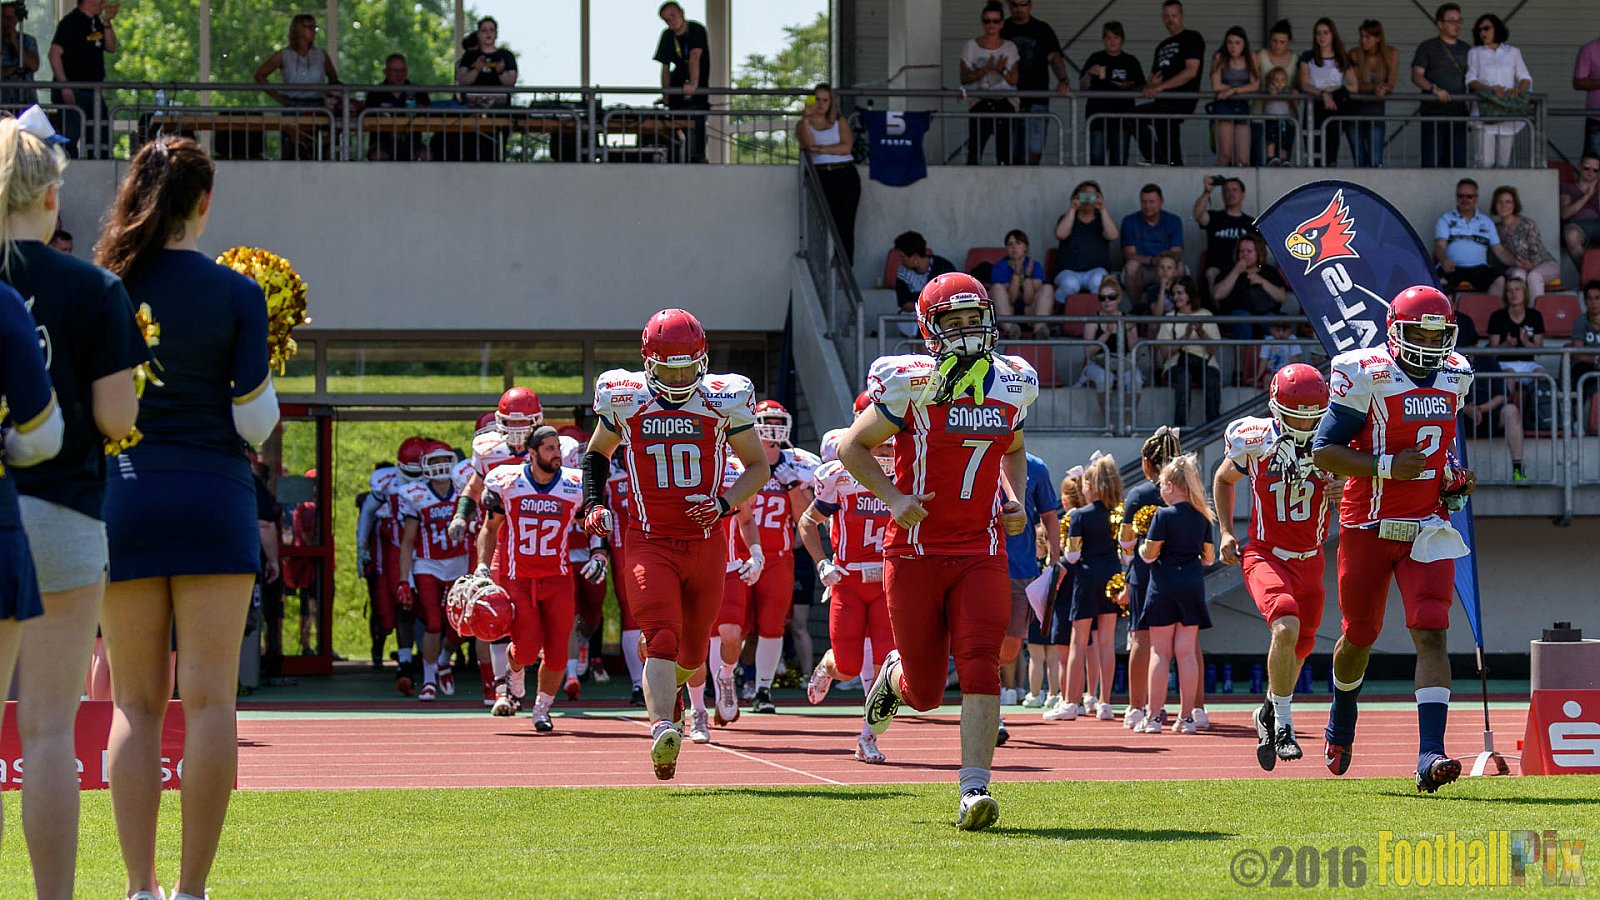 Essen Assindia Cardinals vs. Lübeck Cougars - 05.06.2016 GFL2: Essen Assindia Cardinals vs. Lübeck Cougars (16:35)